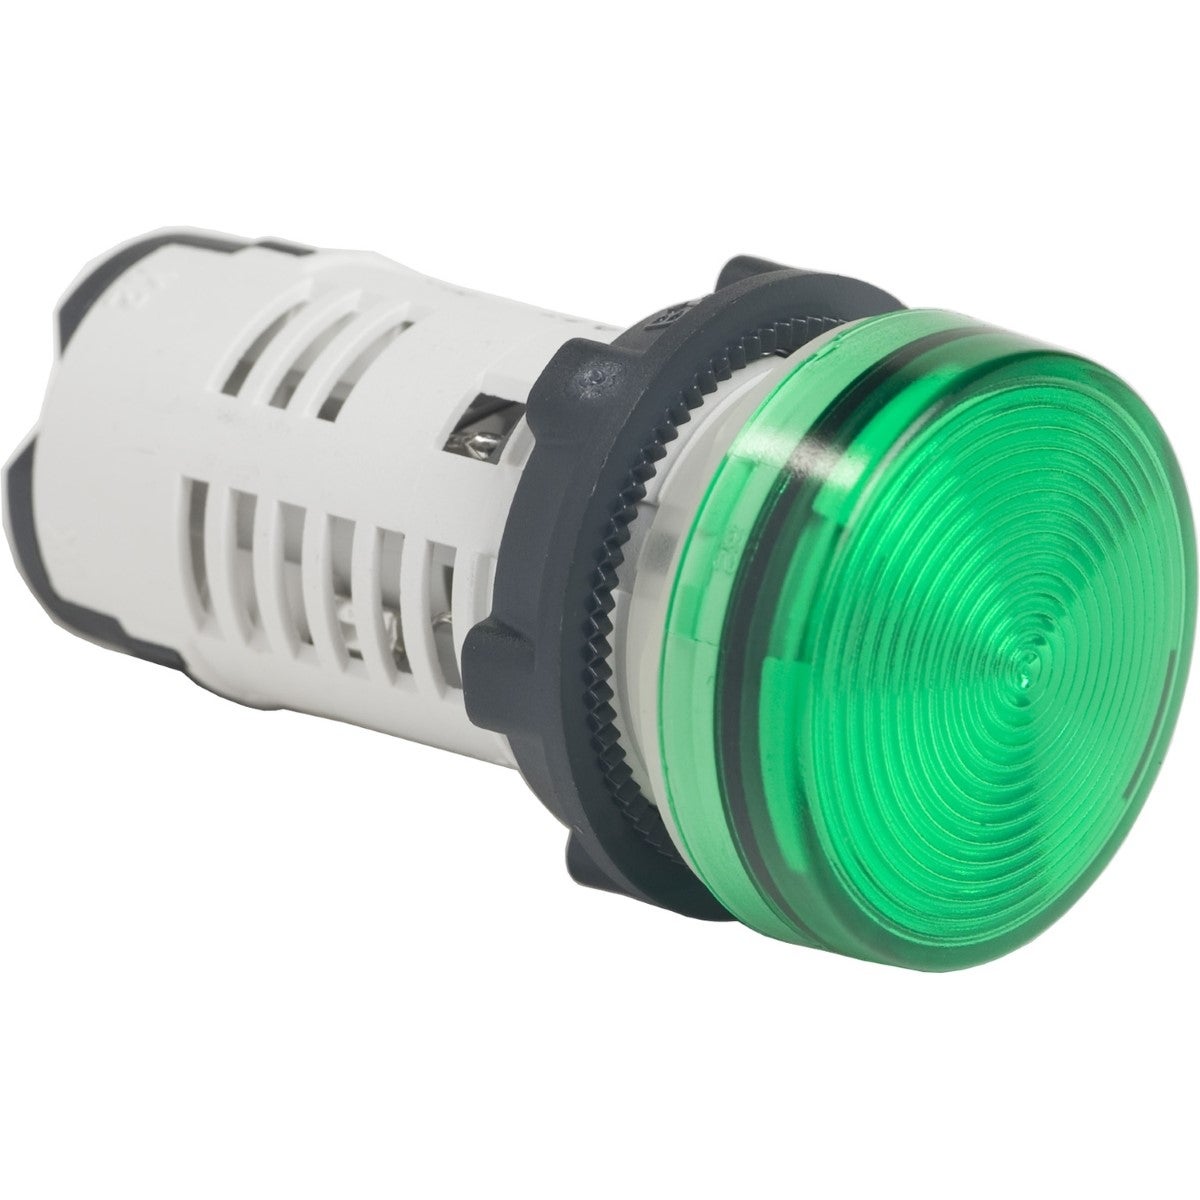 Monolithic pilot light, plastic, green, Ã˜22, integral LED, 110...120 V AC